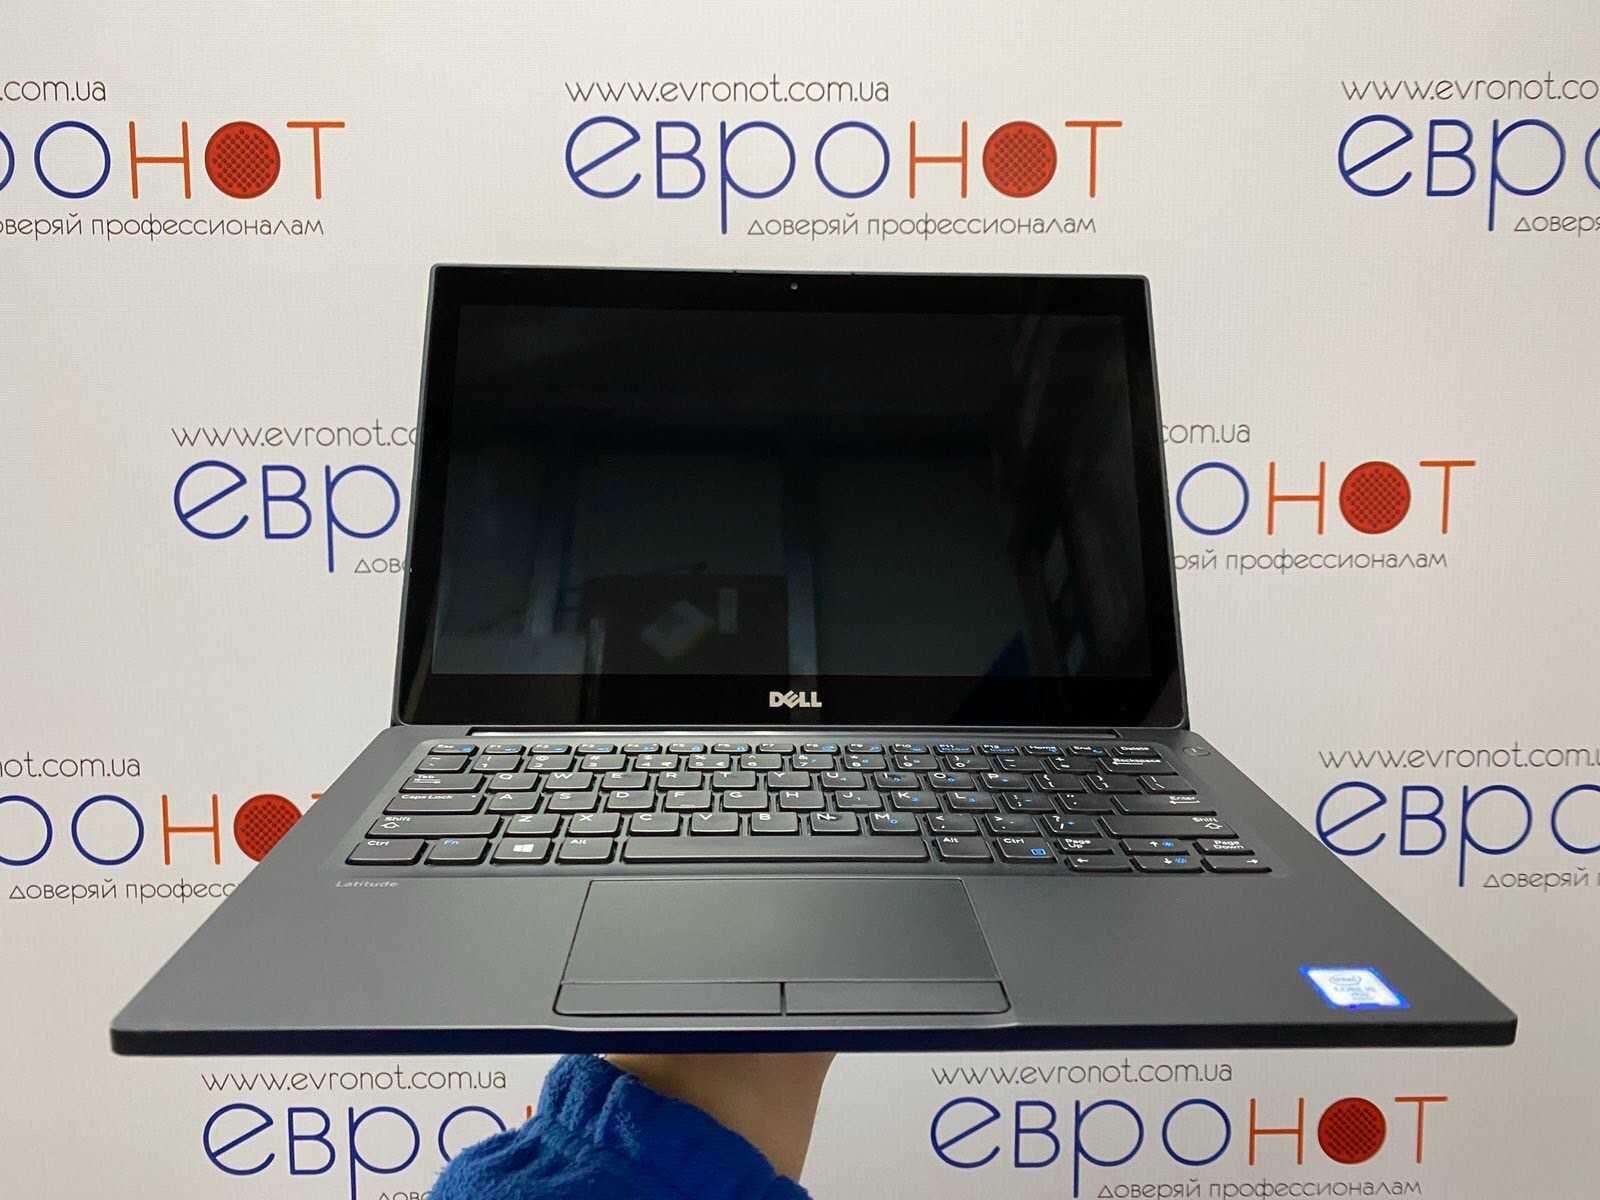 ТОП | Центр распродажи ноутбуков на Петровке | Гарантия/Кредит